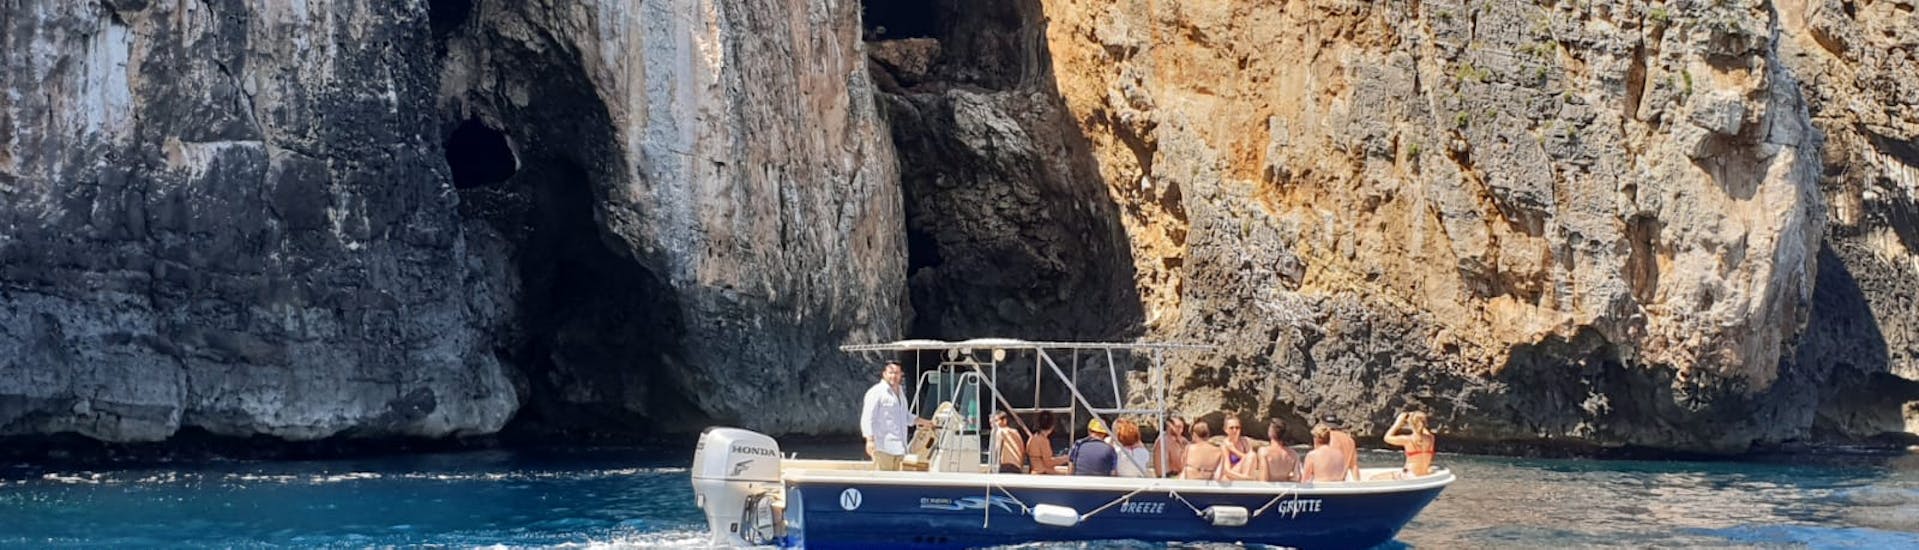 Onze boot passeert voor de grotten tijdens de Boottocht naar de Grotten van Santa Maria di Leuca met Lunch.